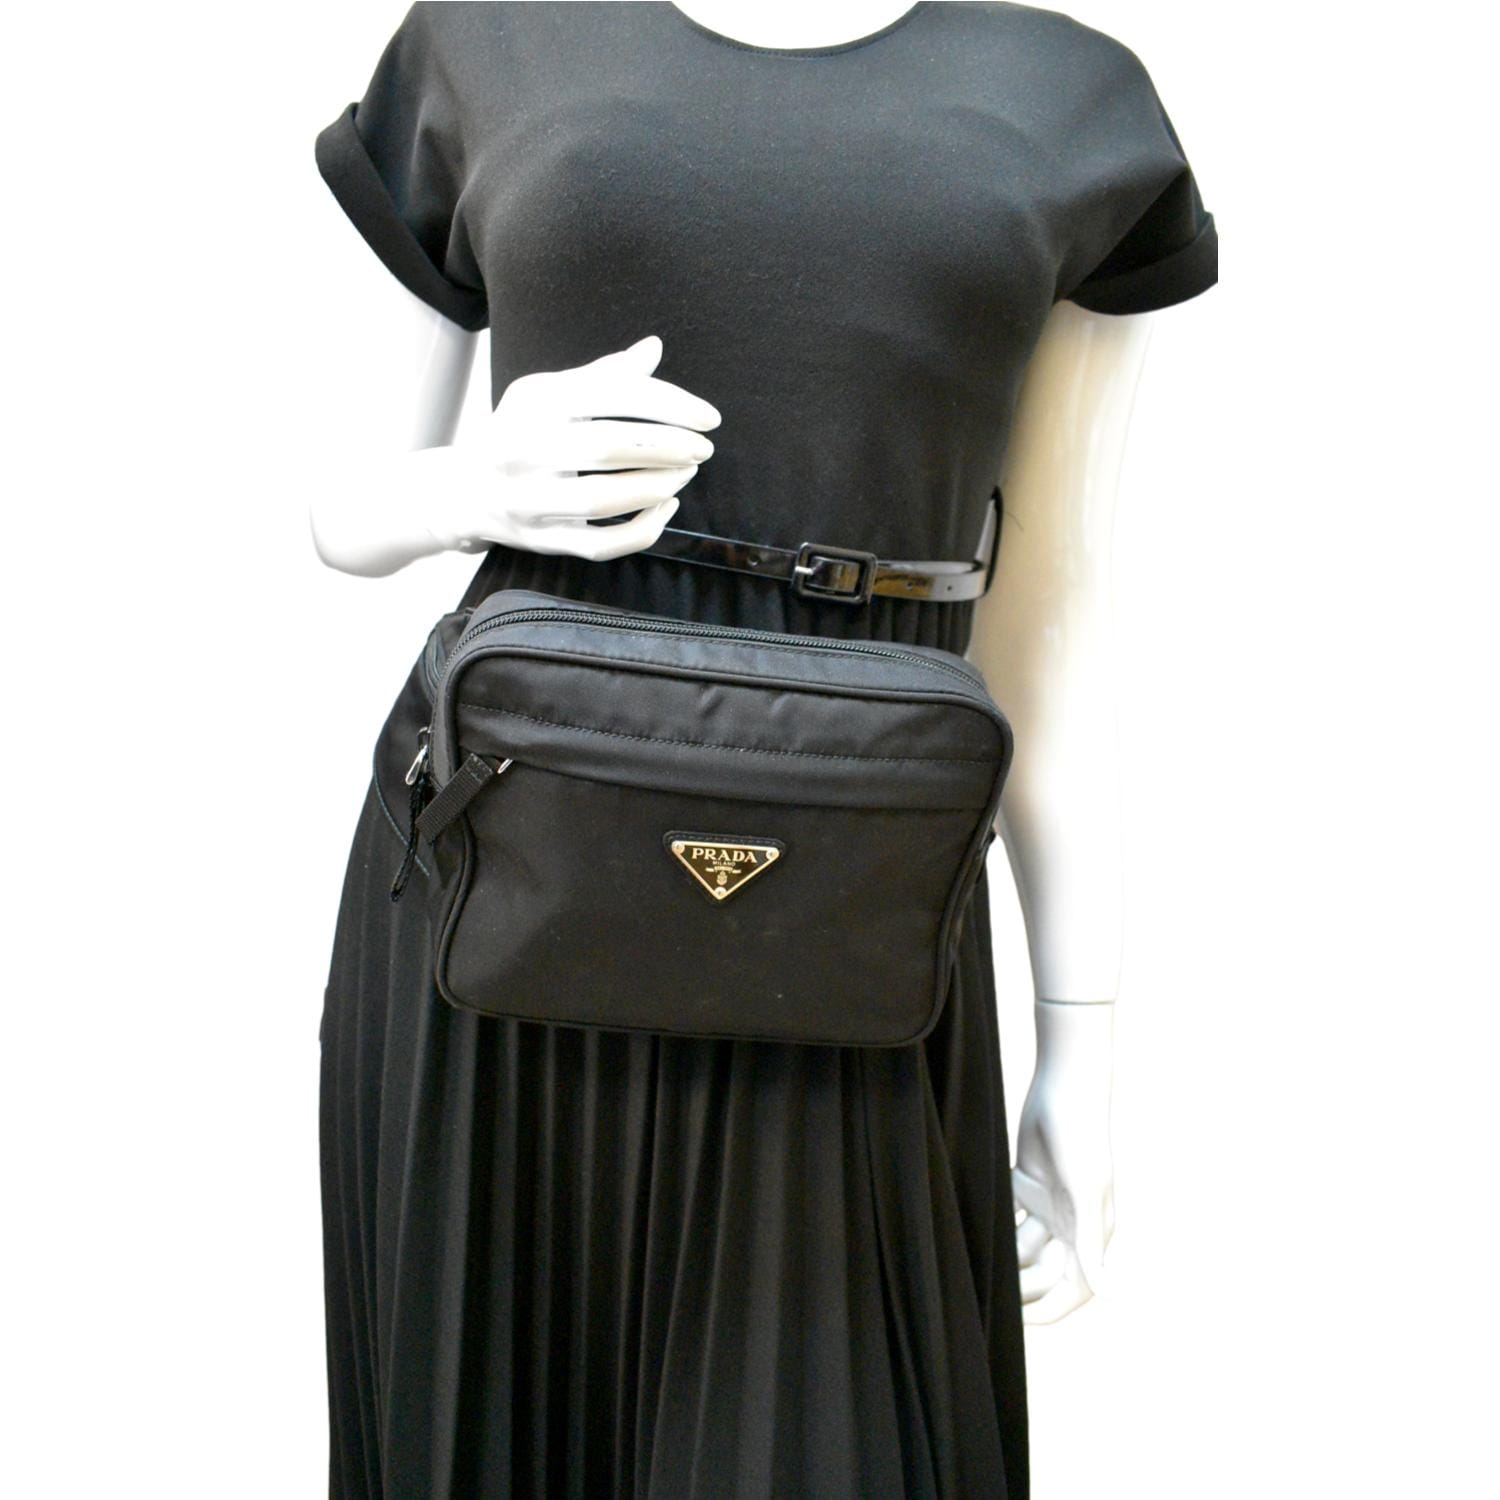 Prada Re-Nylon Belt Bag in Black